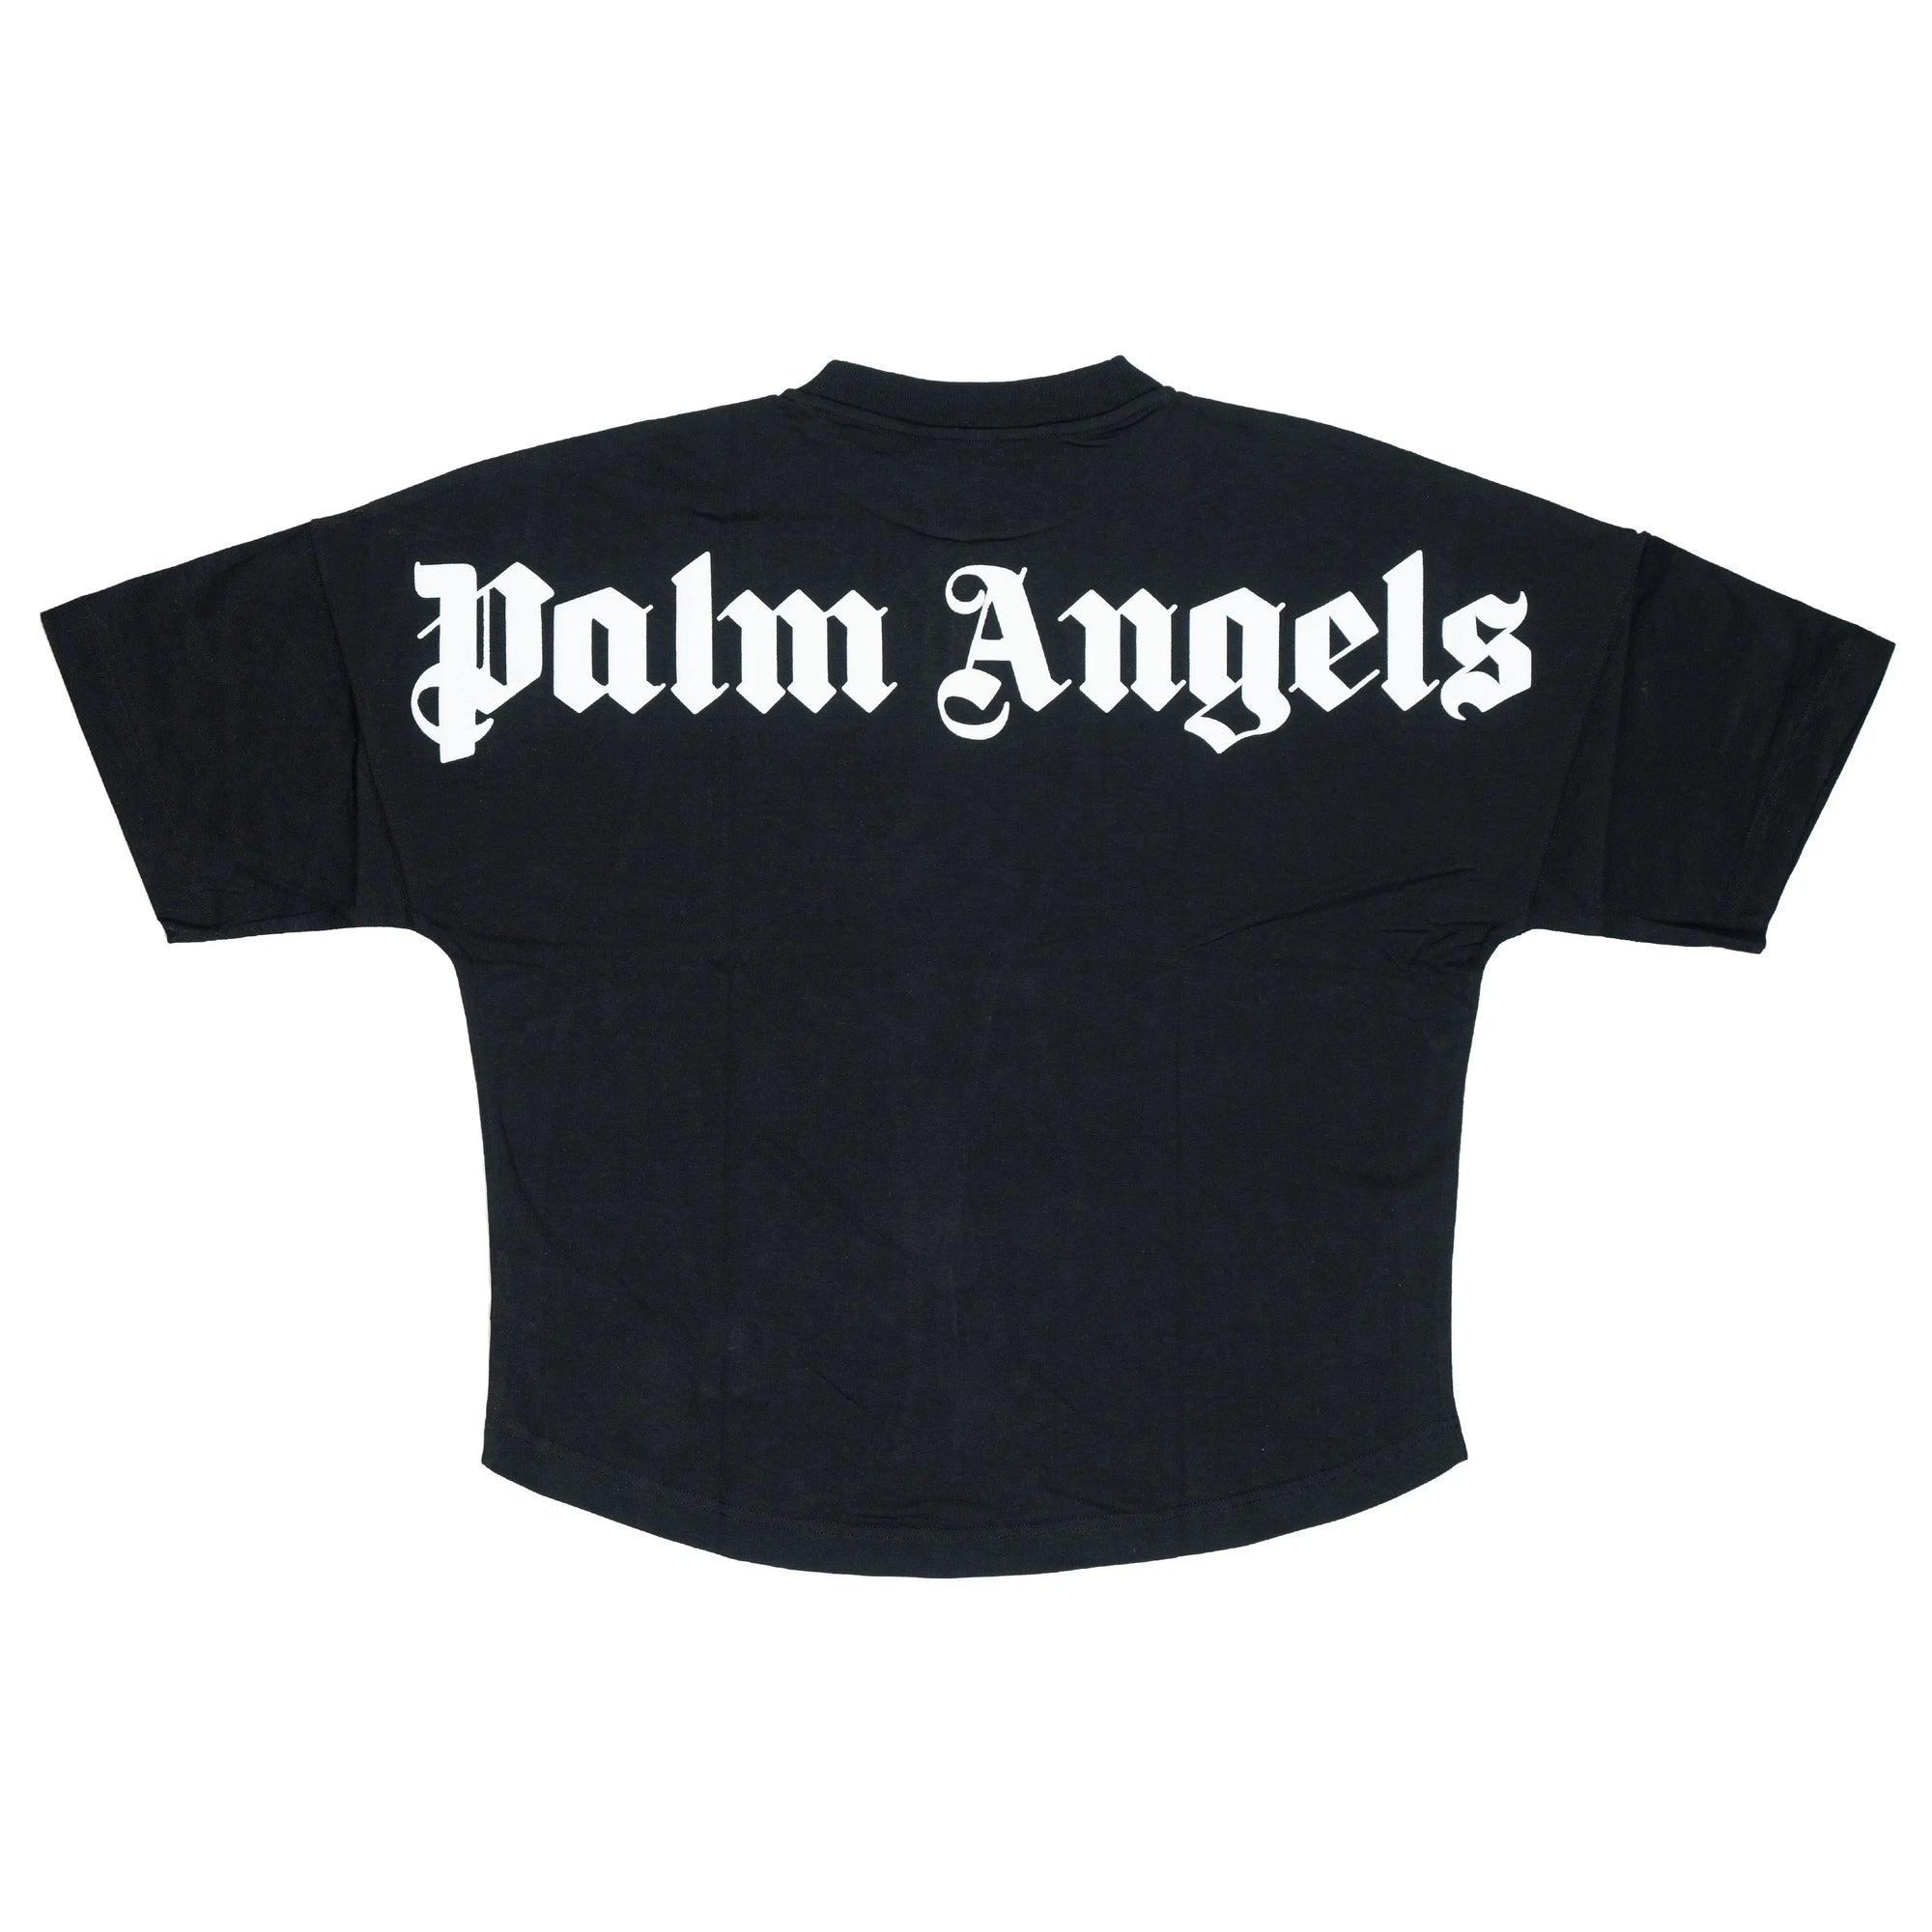 Camiseta Palm Angels oversized Preta - ENCOMENDA - Rabello Store - Tênis,  Vestuários, Lifestyle e muito mais